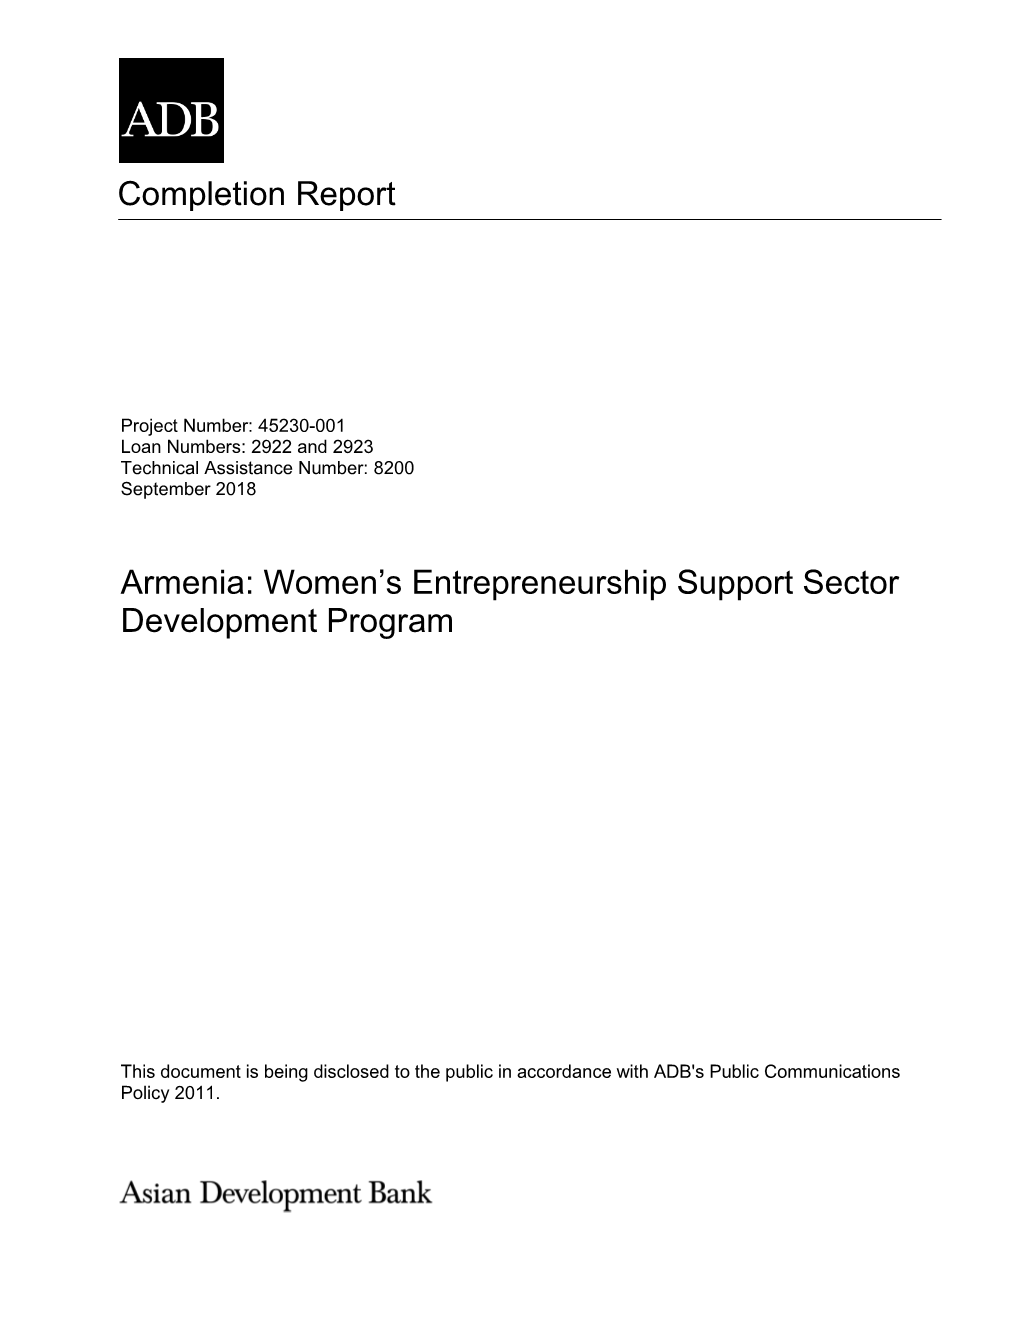 45230-001: Women's Entrepreneurship Support Sector